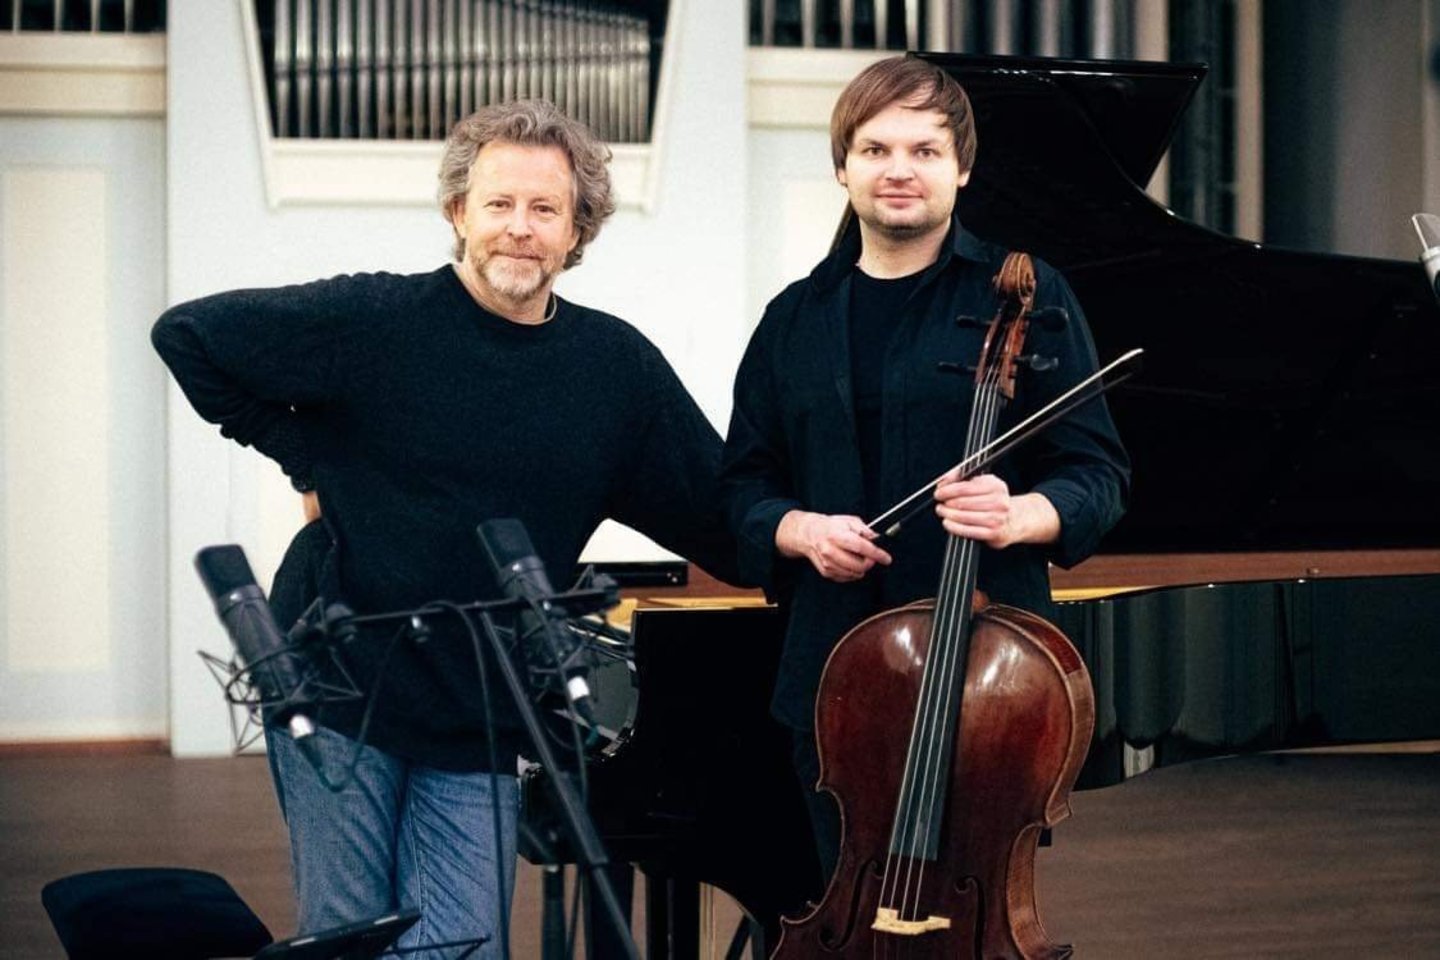 Vos prieš porą metų drauge groti pabandę muzikantai R.Zubovas ir G.Pyšniakas išsyk pajuto bendrystę.<br> J.Šopos nuotr.